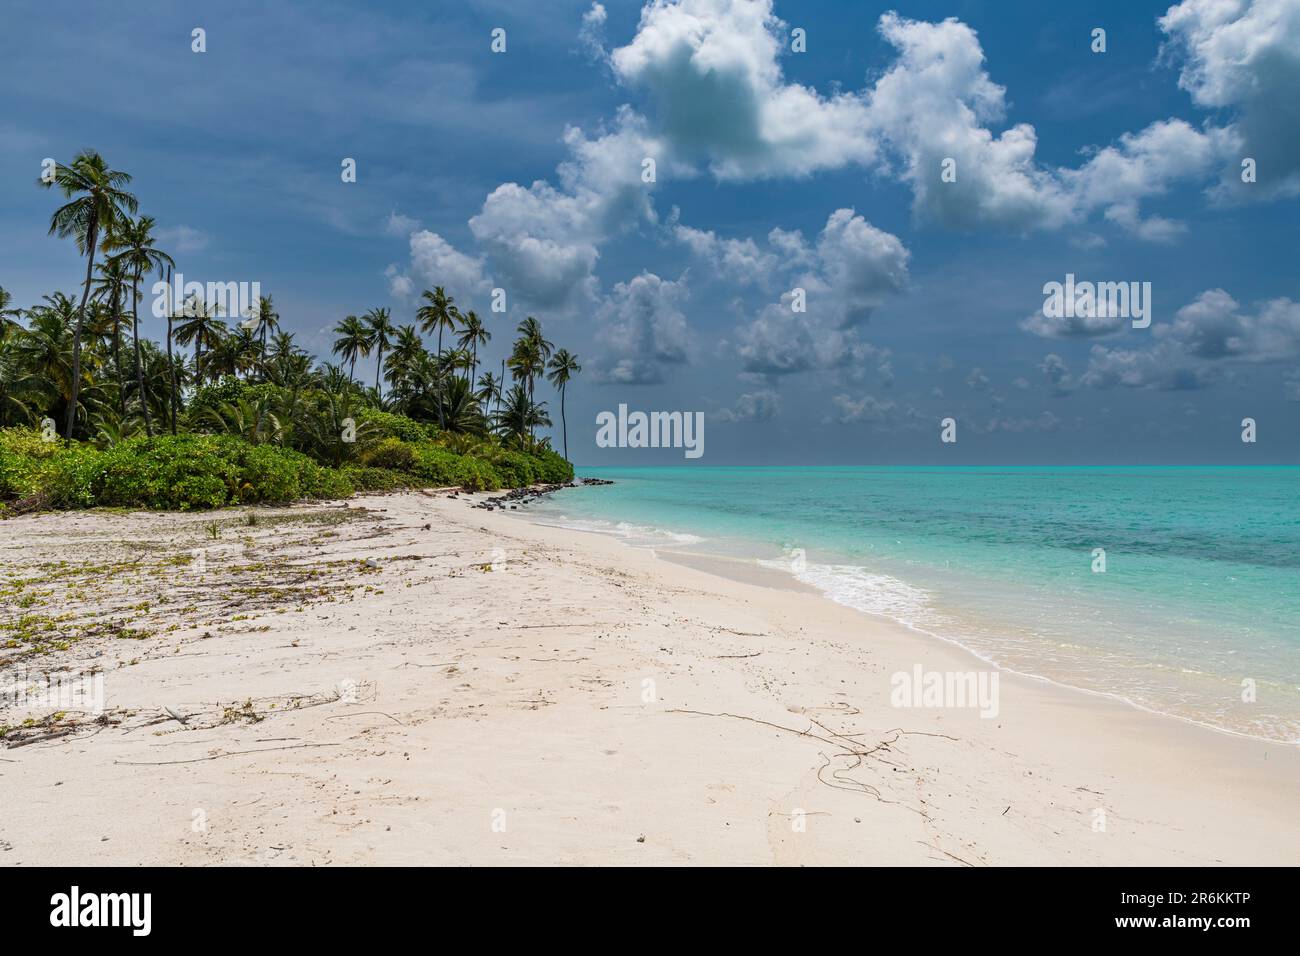 Plage de sable blanc sur l'île de Bangaram, archipel de Lakshadweep, territoire de l'Union de l'Inde, Océan Indien, Asie Banque D'Images